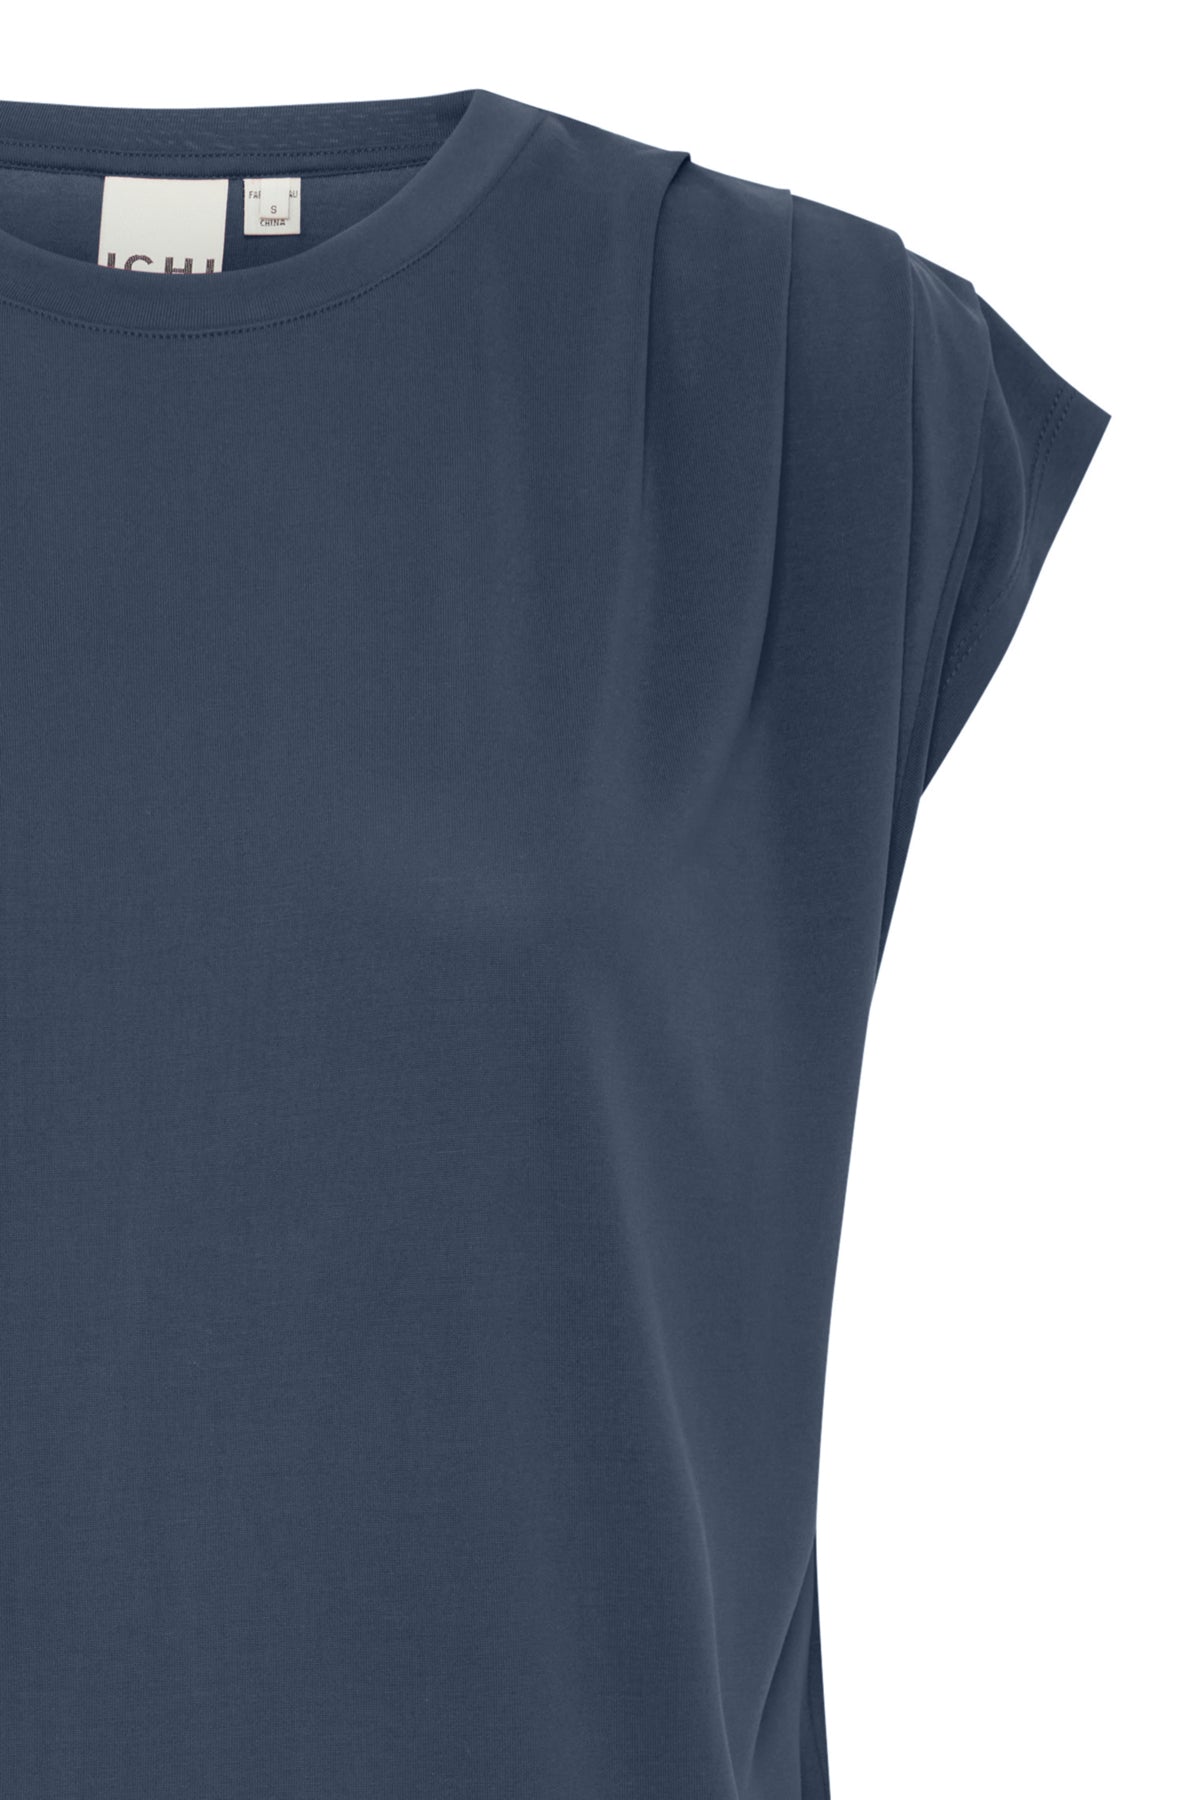 Camiseta azul oscuro con fruncido en hombros